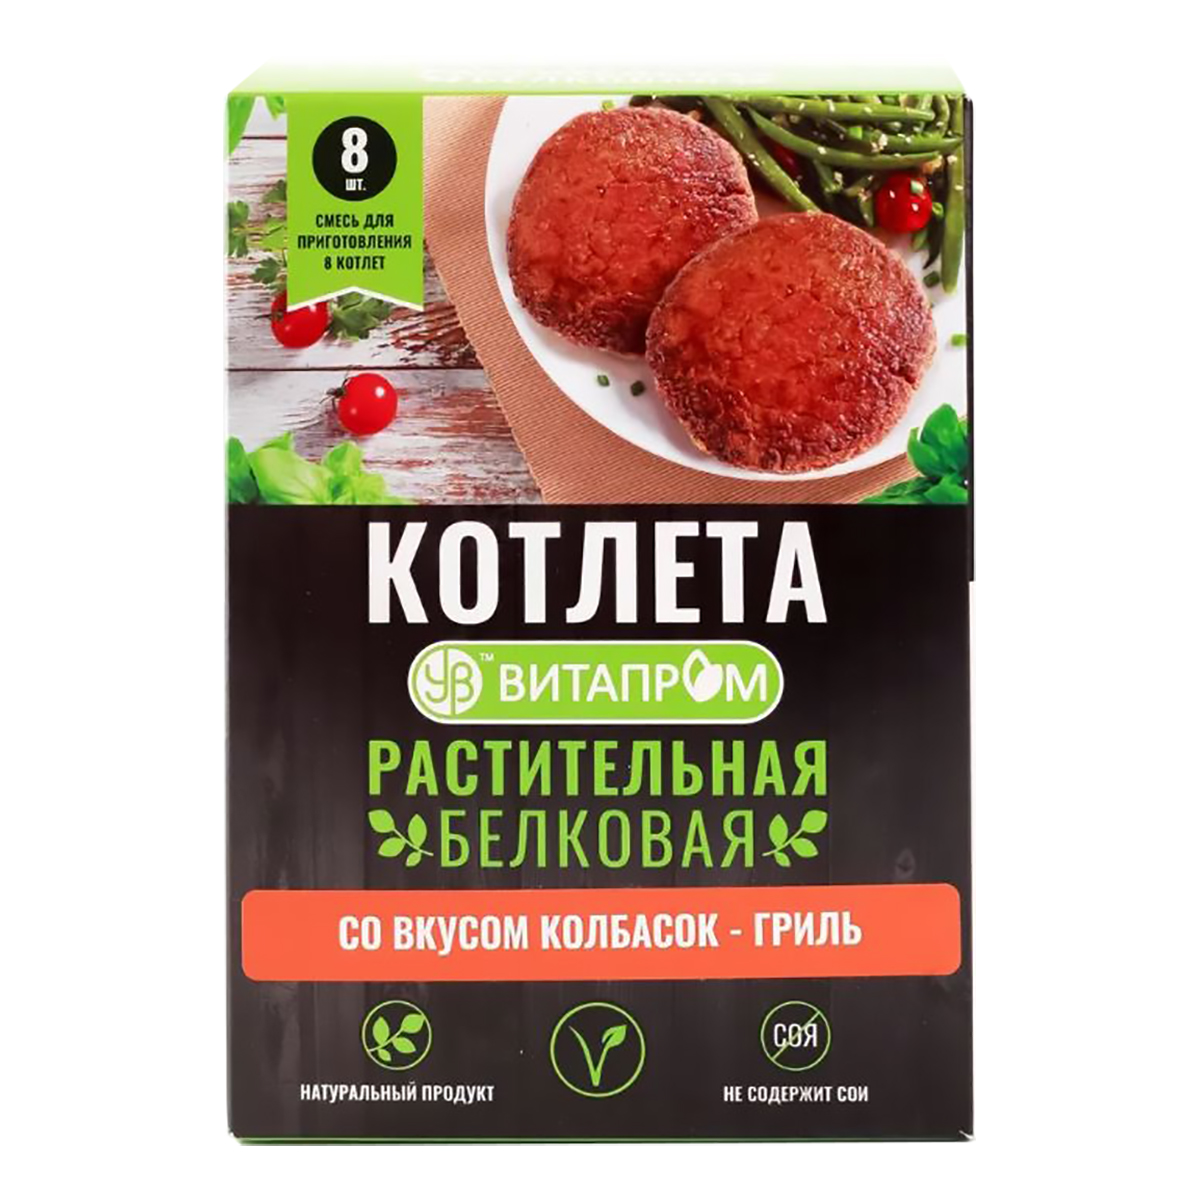 Котлета белковая растительная Со вкусом Колбасок-гриль (смесь сухая на 8 шт.), коробочка, 200 г, Витапром